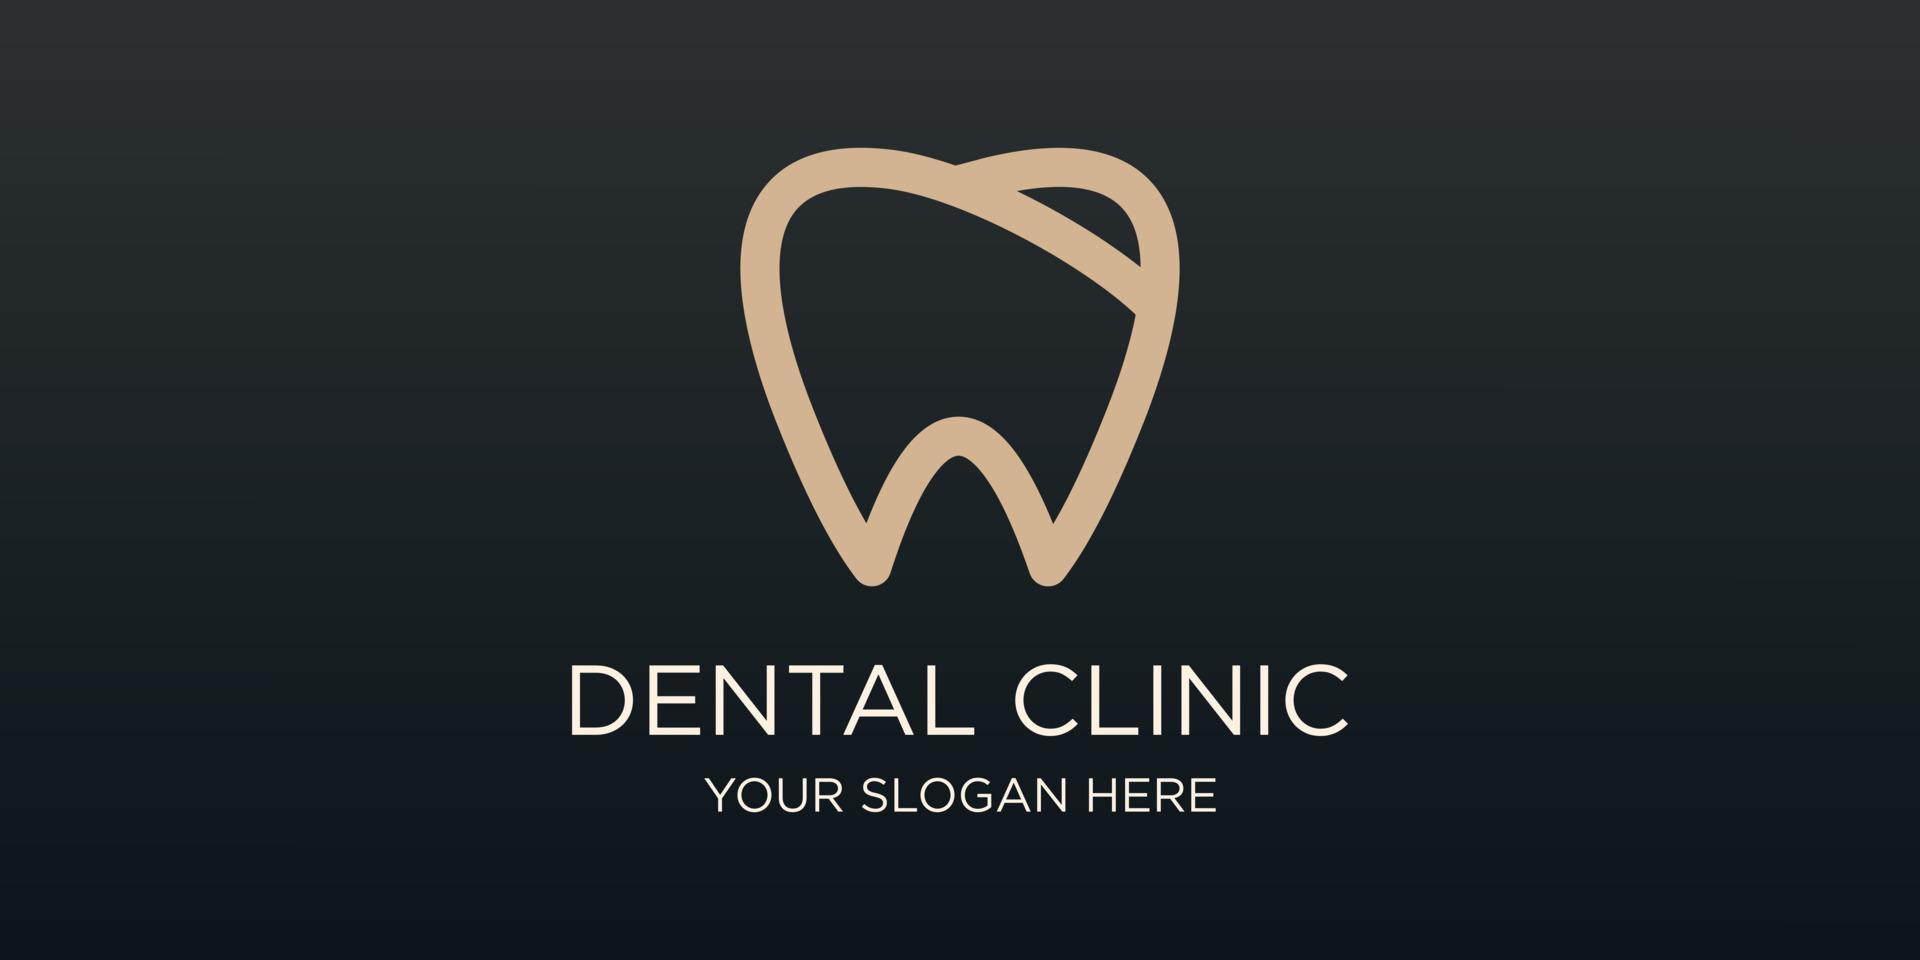 dental clinic tooth logo design vector illustration.